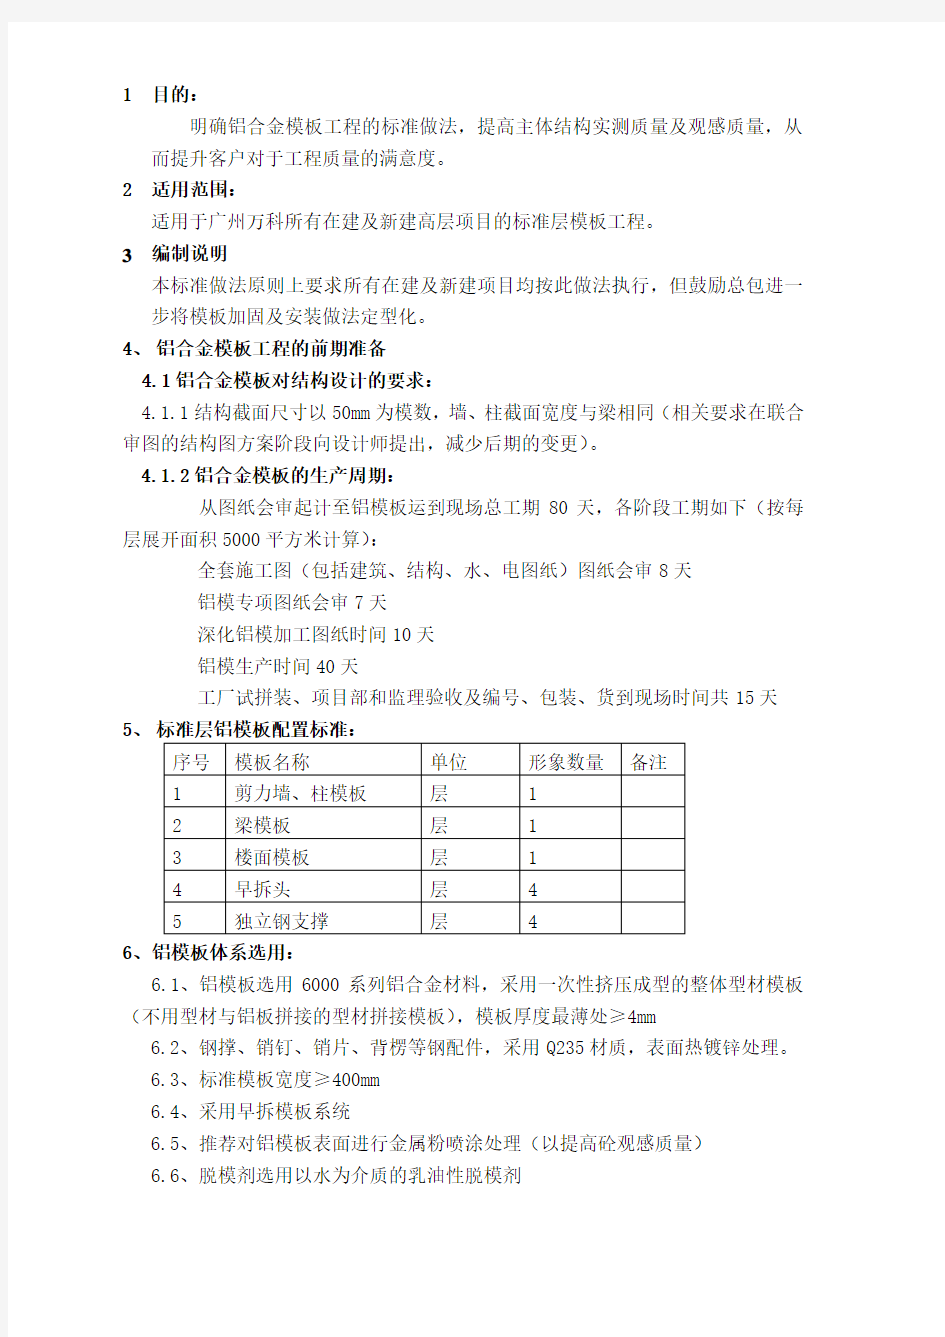 广州万科铝合金模板工程标准做法(发布版)